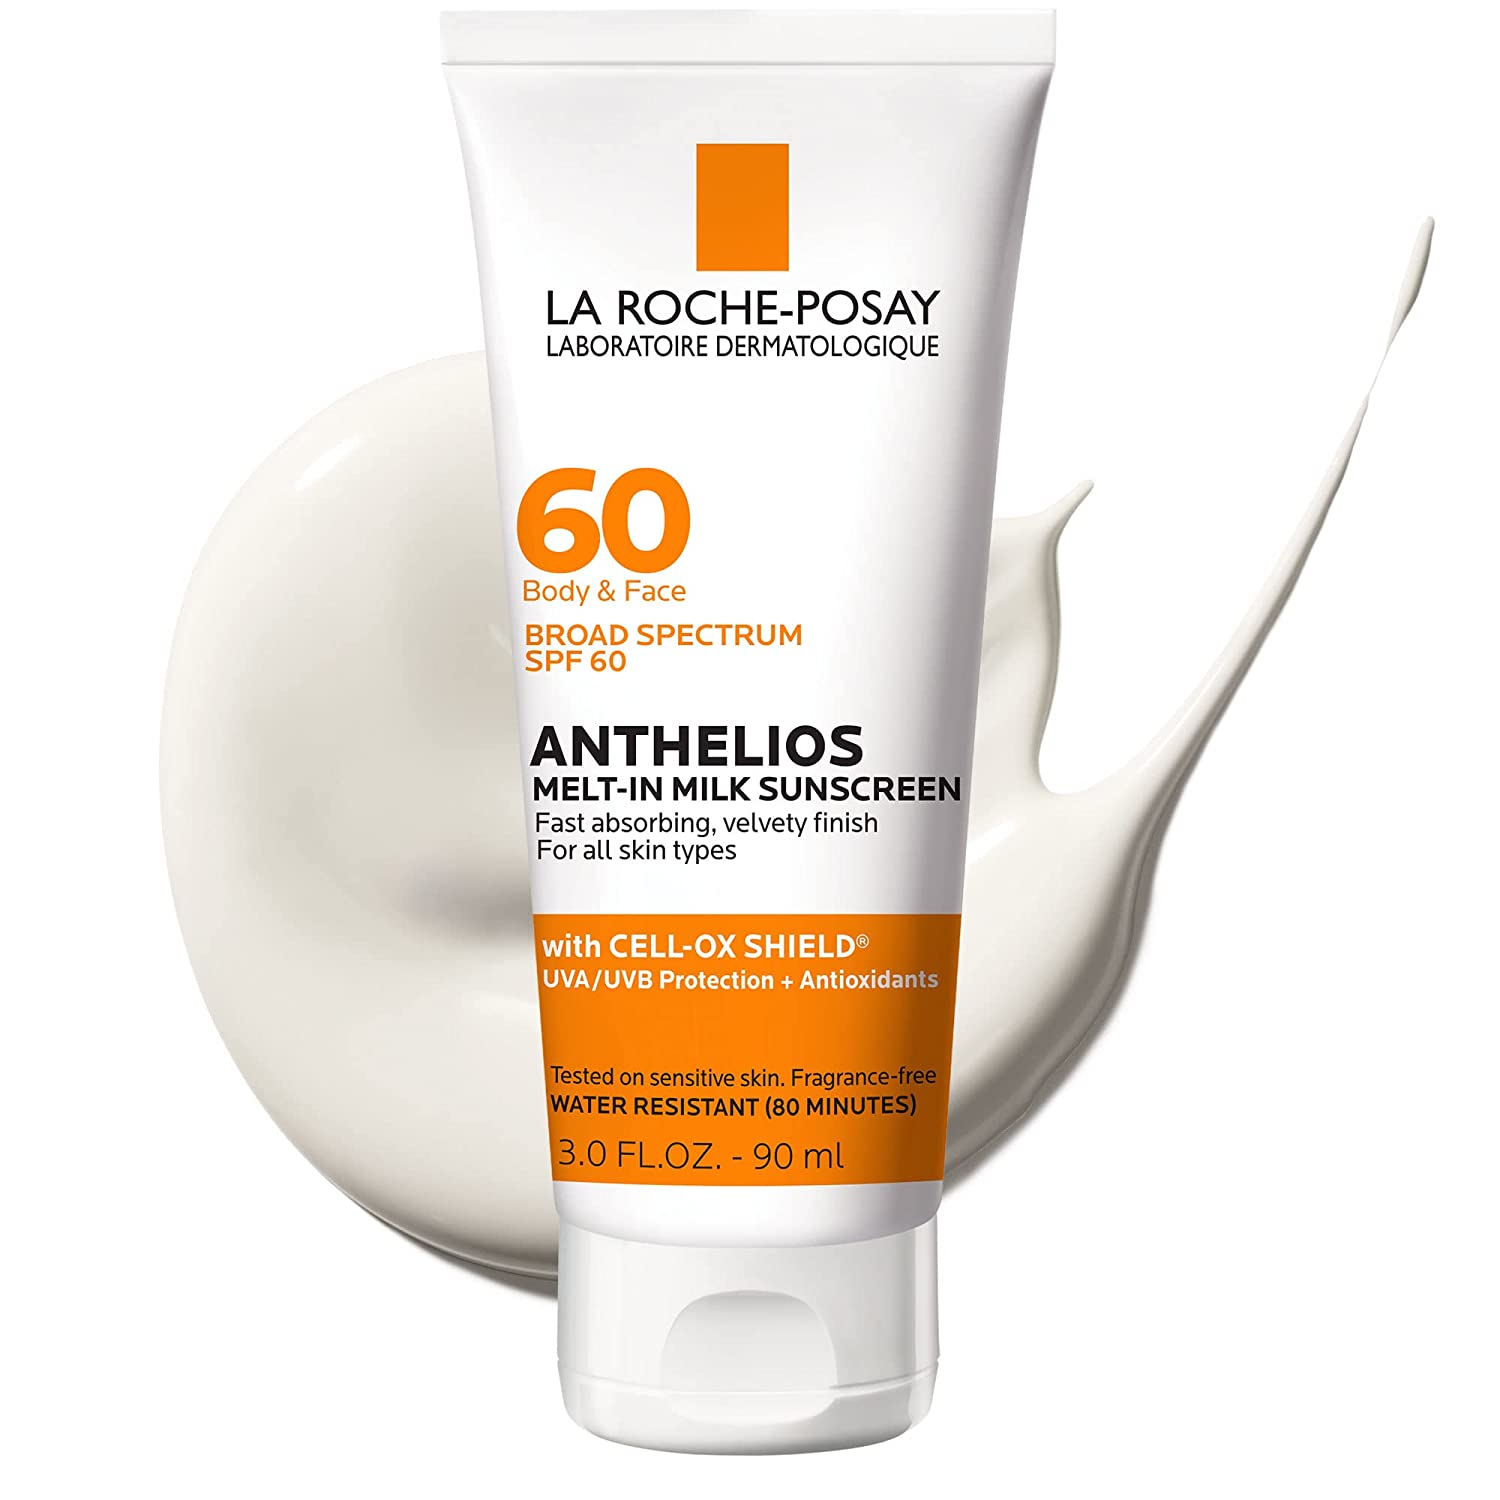 La Roche-Posay Cell-Ox Shield Sunscreen For Men’s Faces, SPF 60